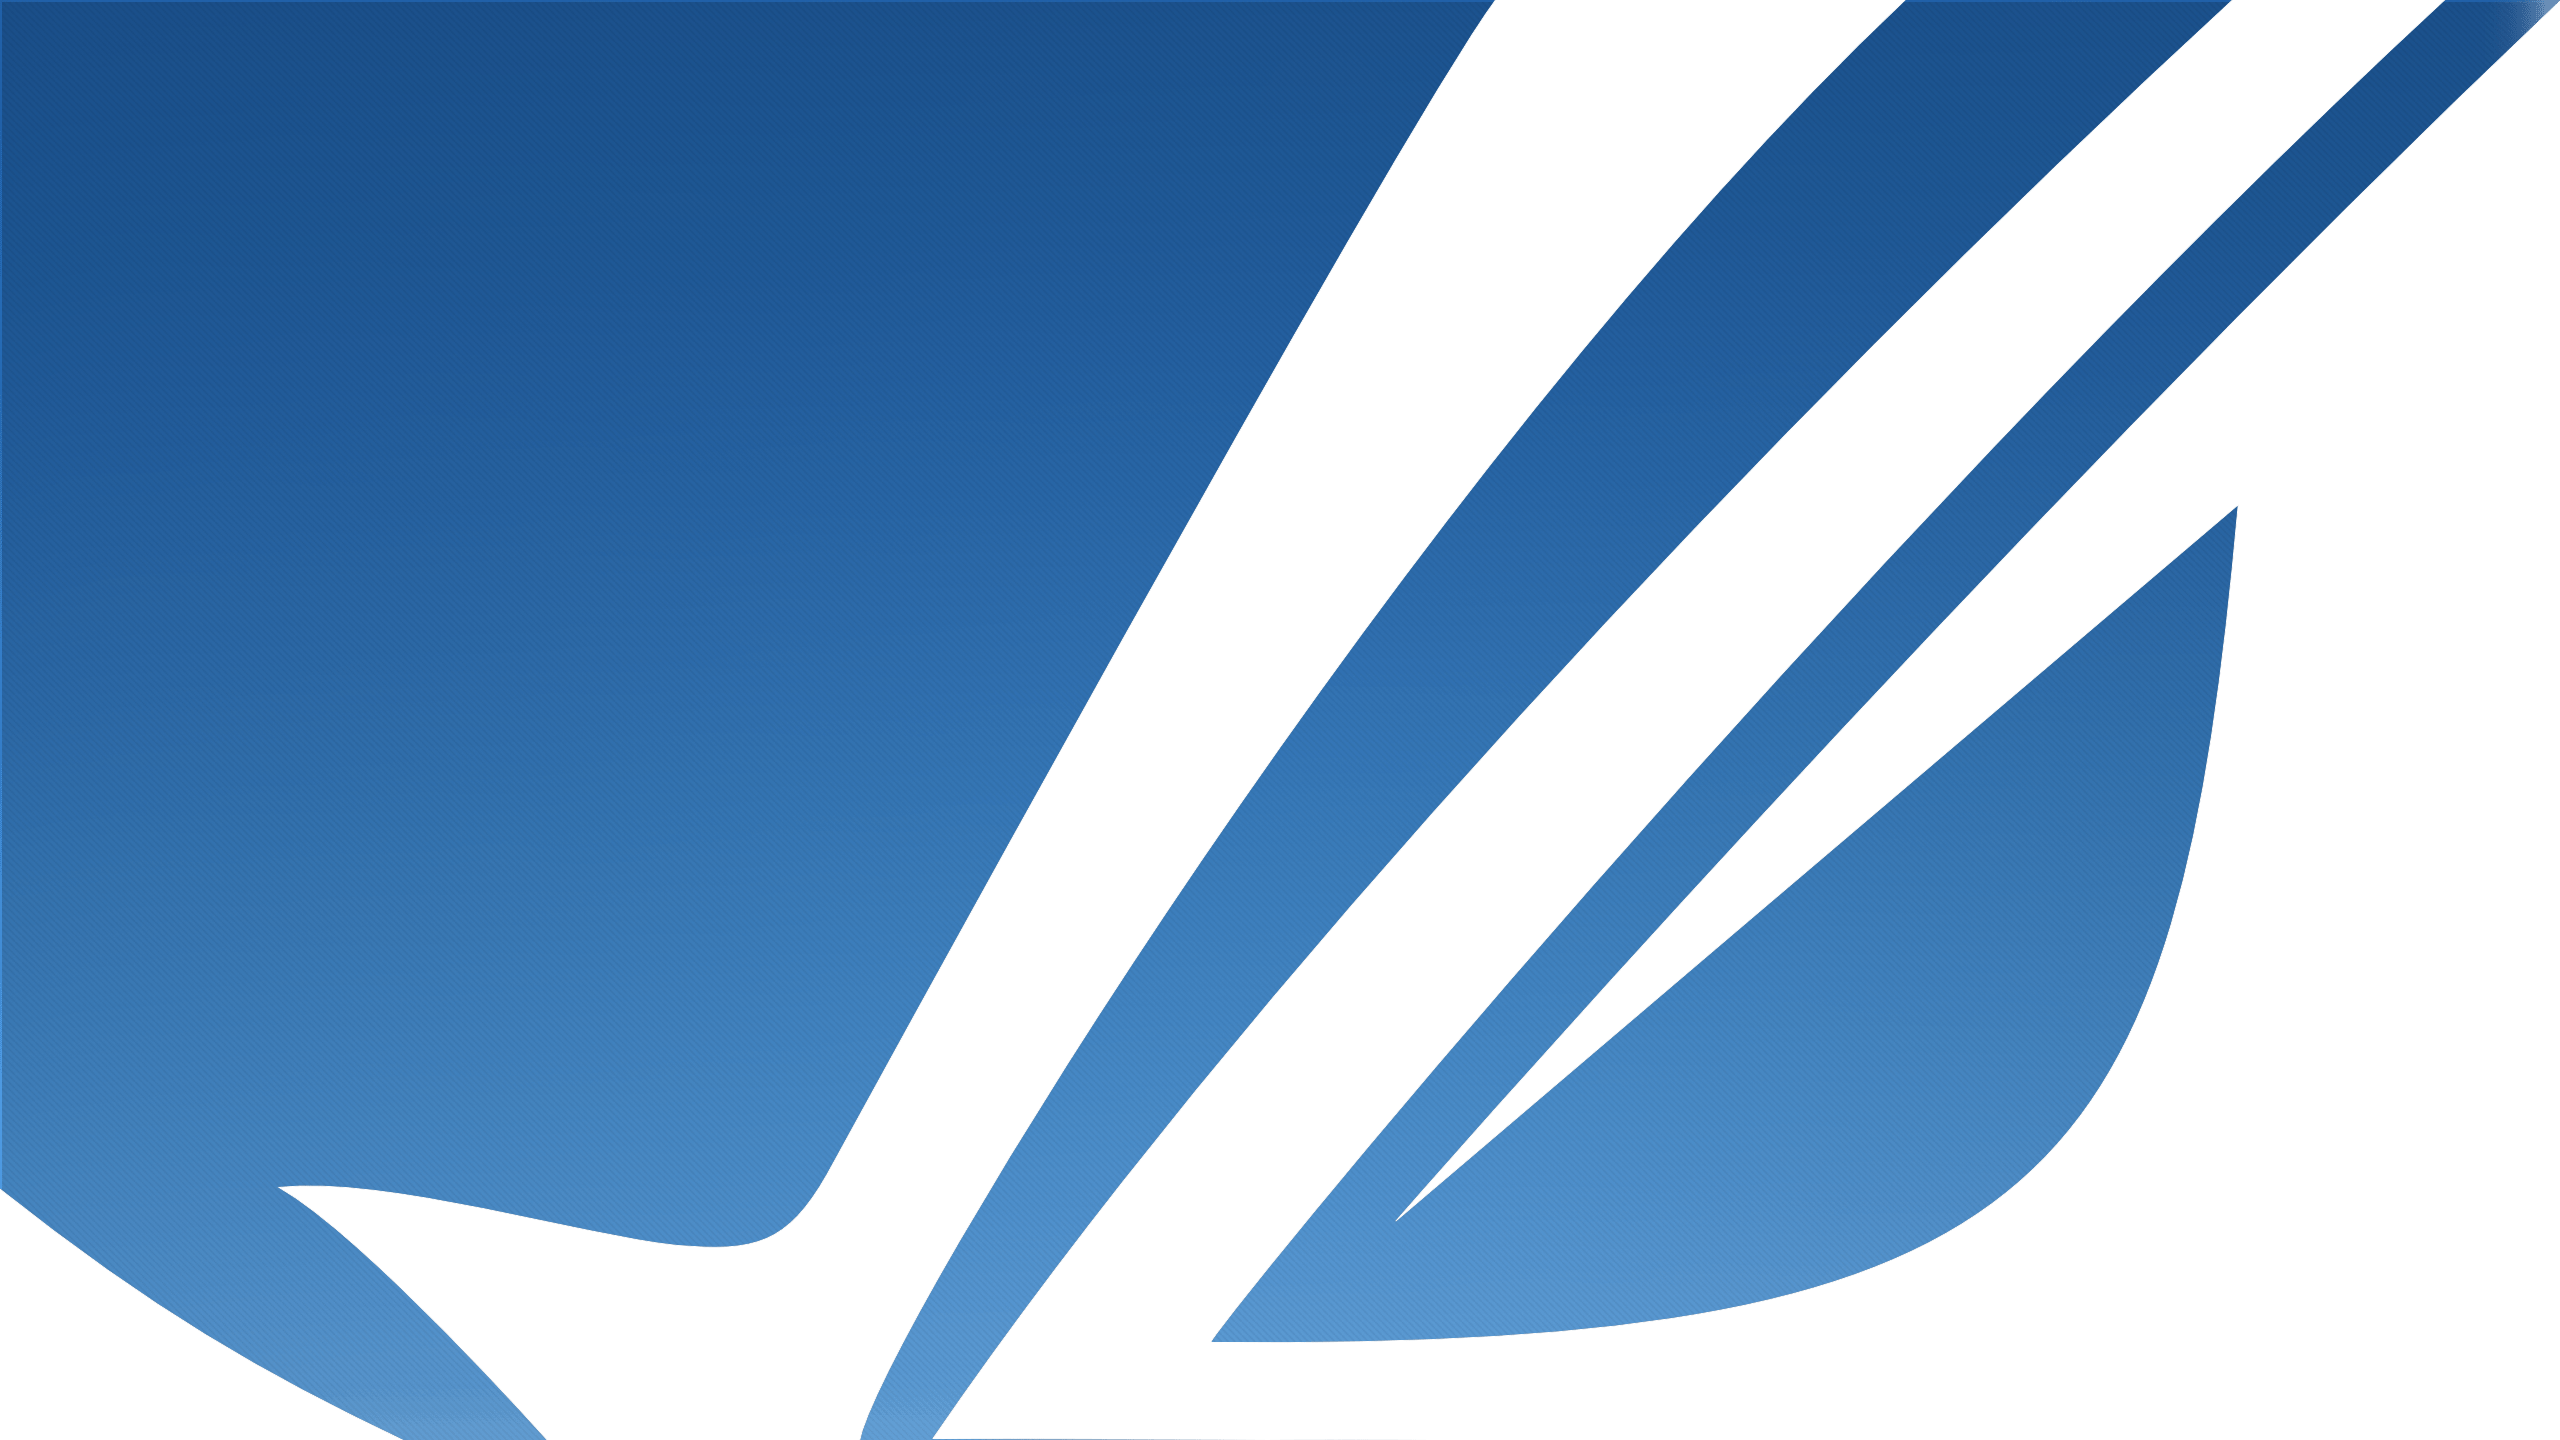 Обновление рог фон. ASUS ROG White Wallpaper. ASUS Blue. ASUS Republic of Gamers logo. Панорама стильный логотип ROG.